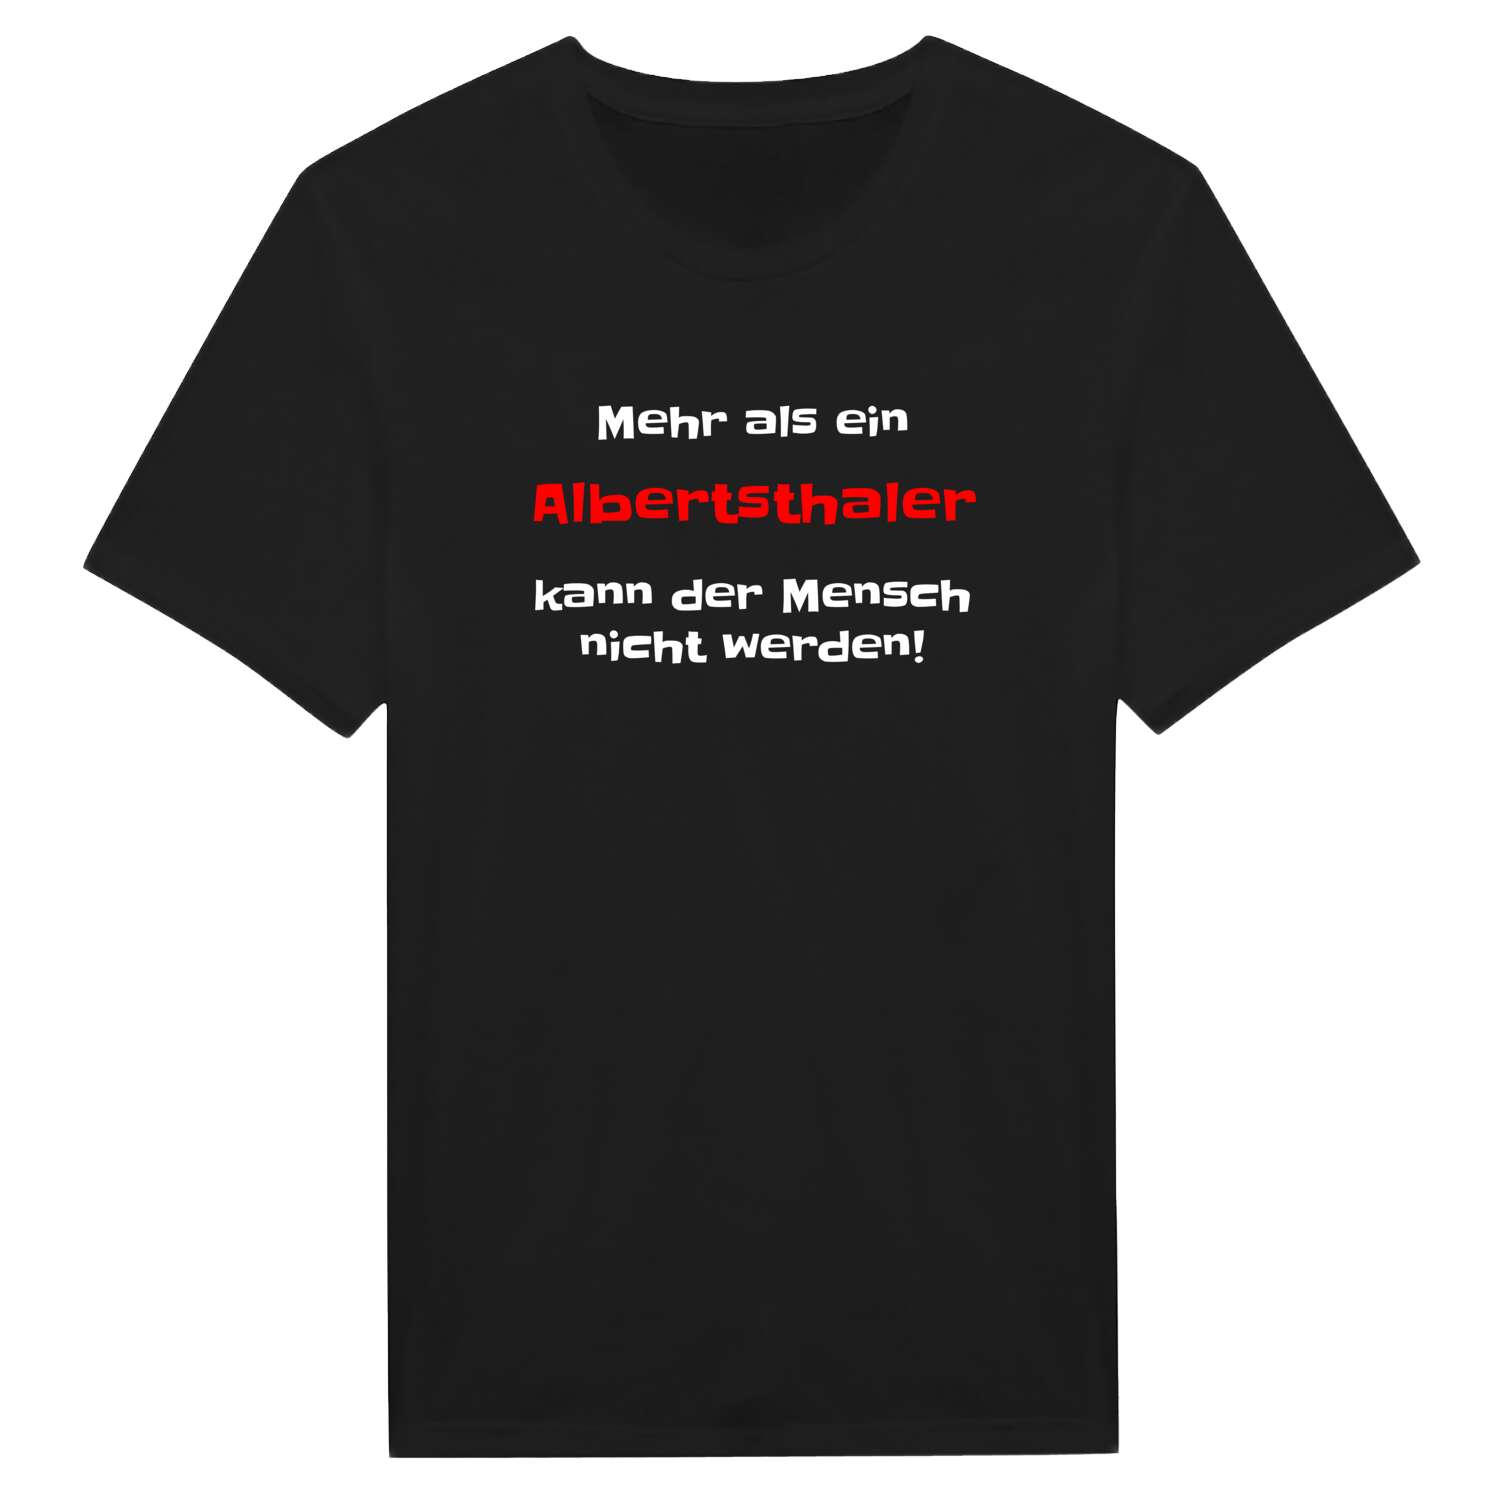 Albertsthal T-Shirt »Mehr als ein«